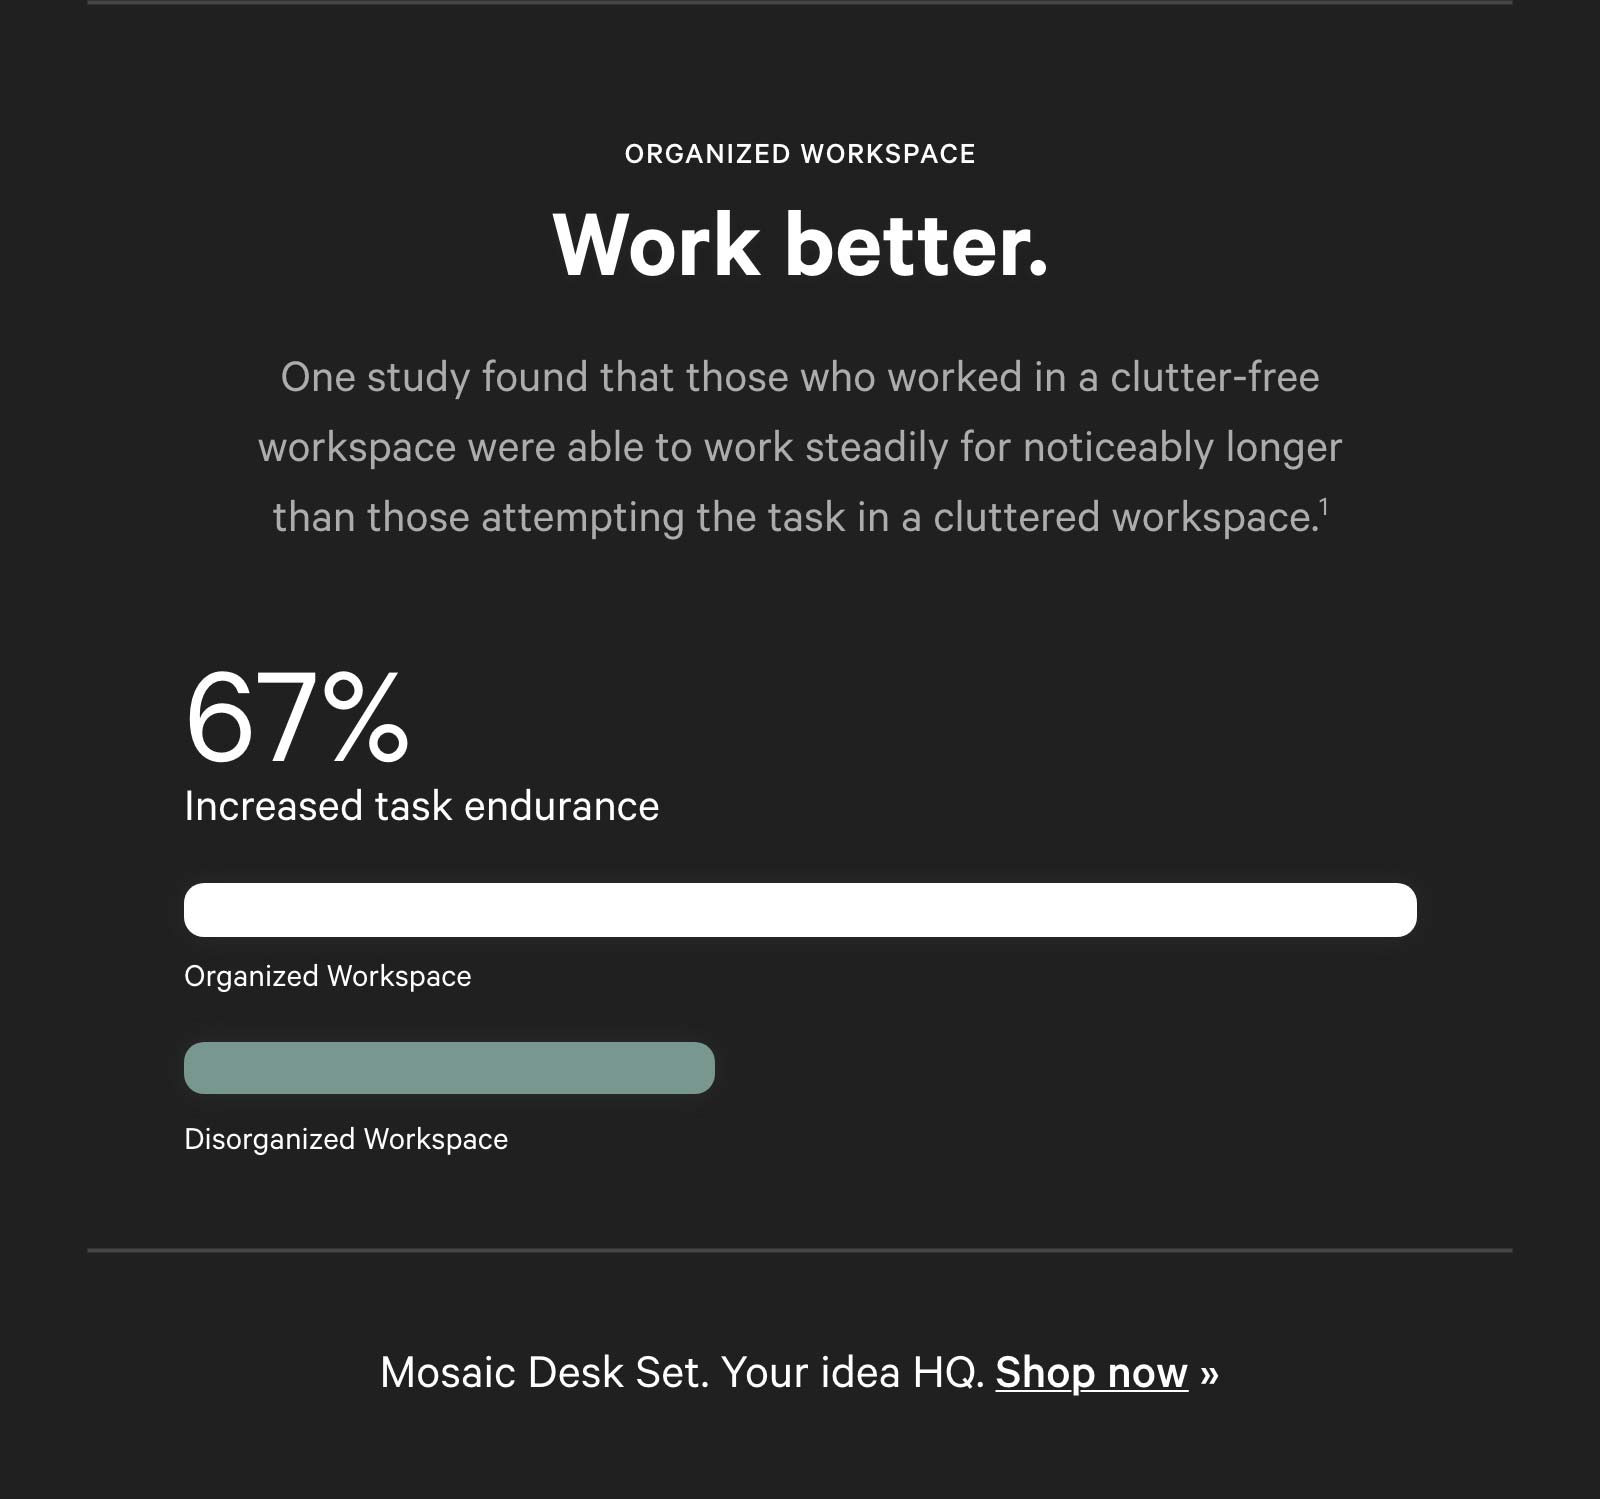 Work better. 67% increased task endurance.